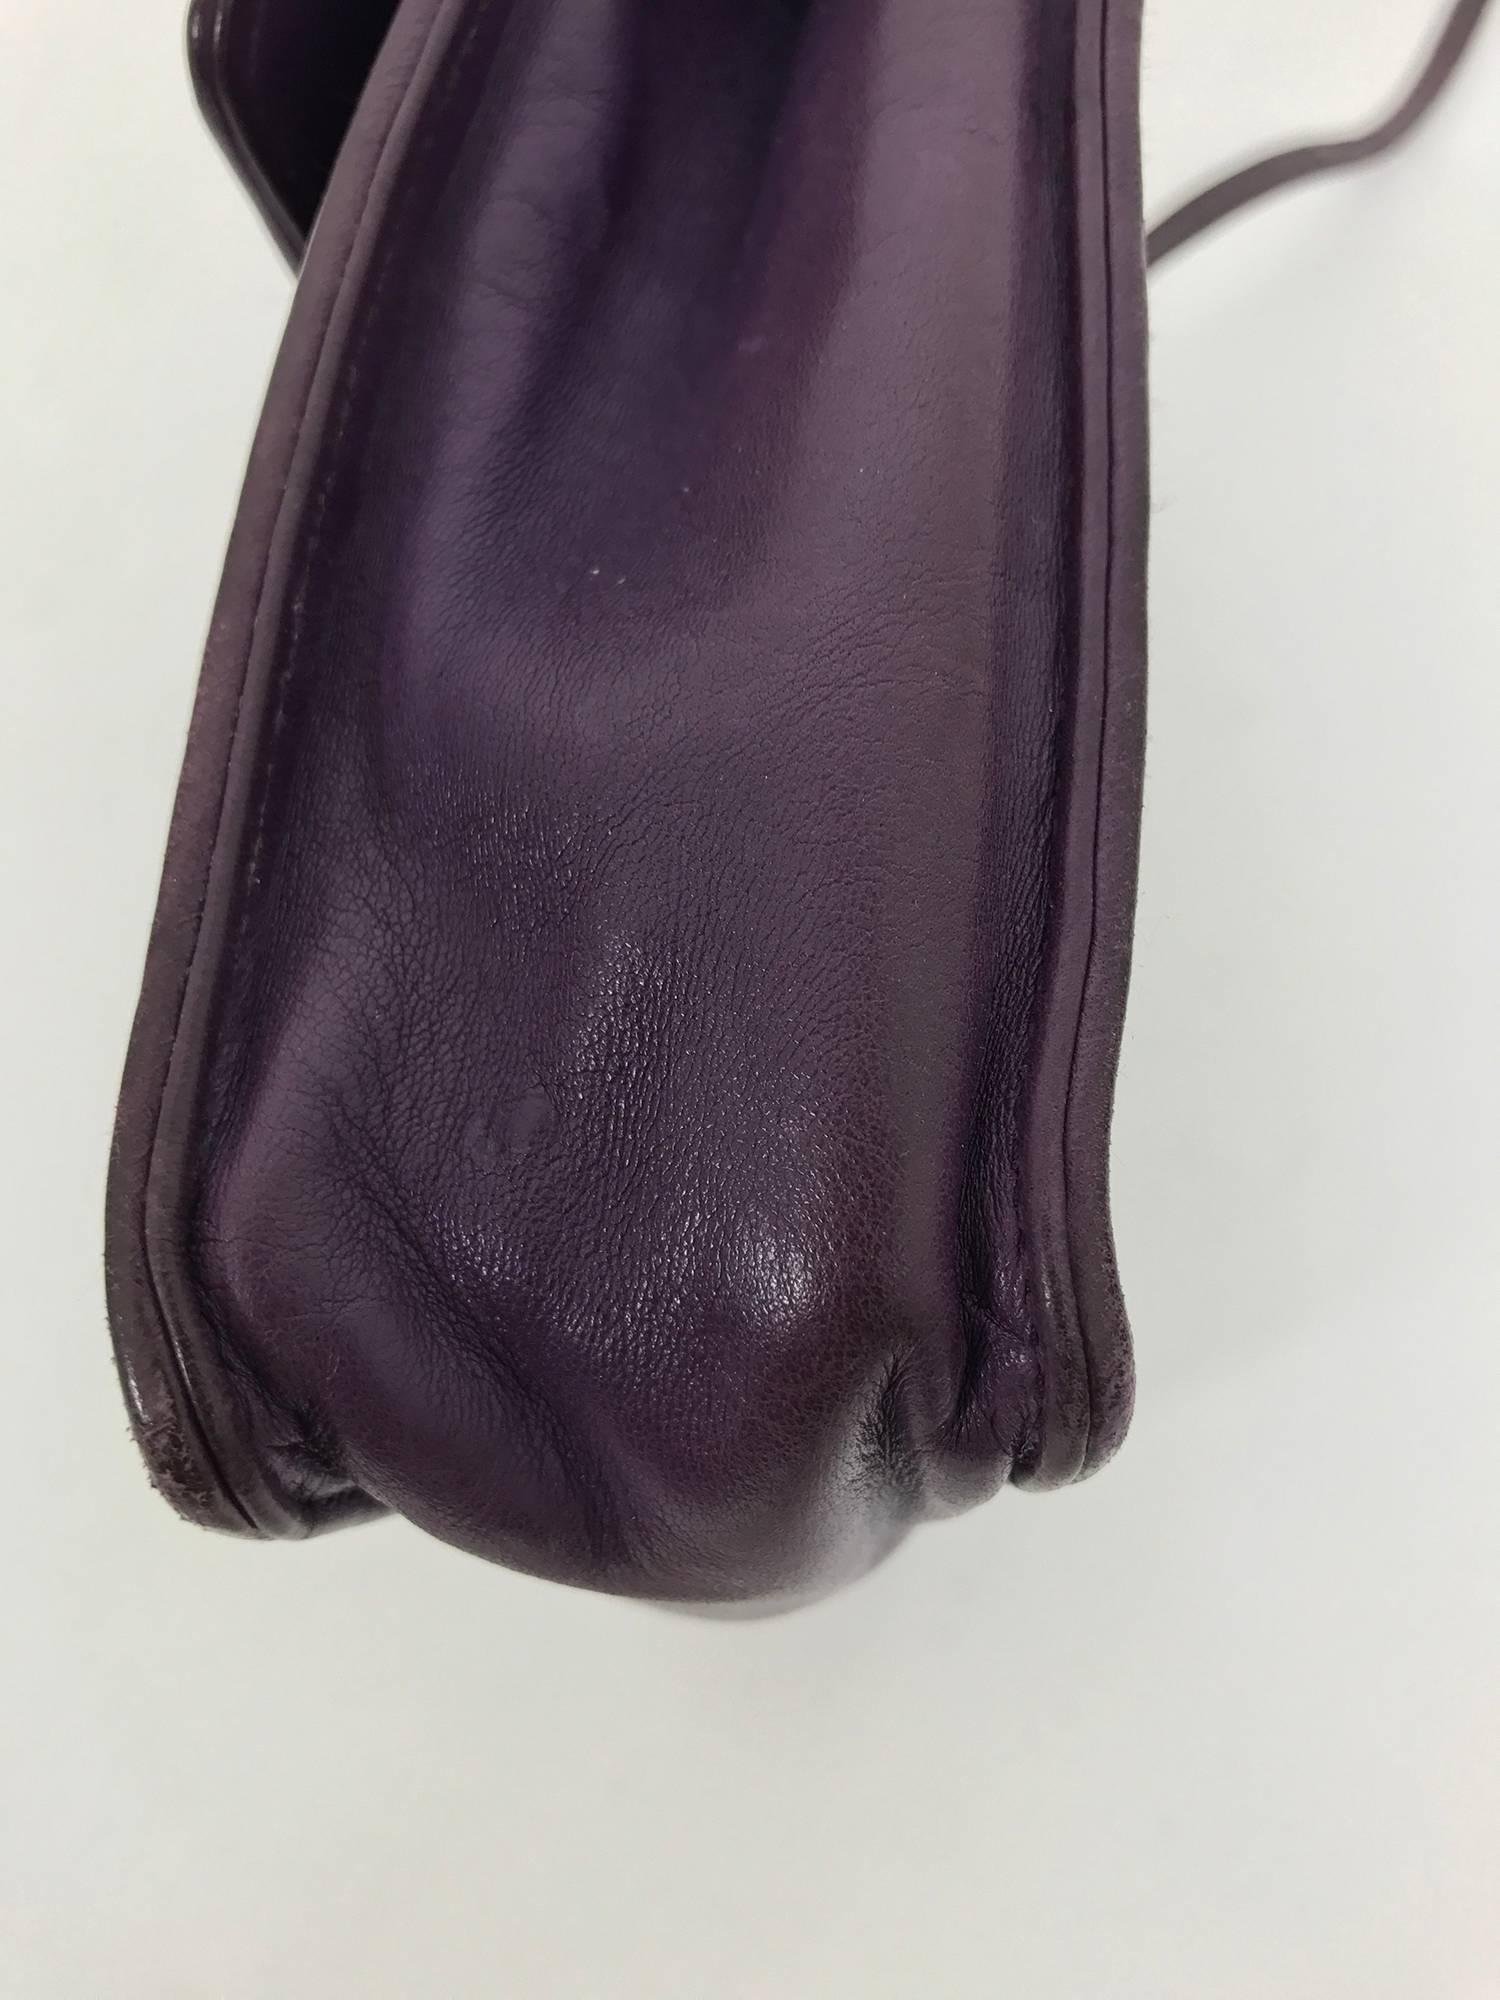 Bottega Veneta vintage 1980s intrecciato soft purple leather handbag 1980s 3